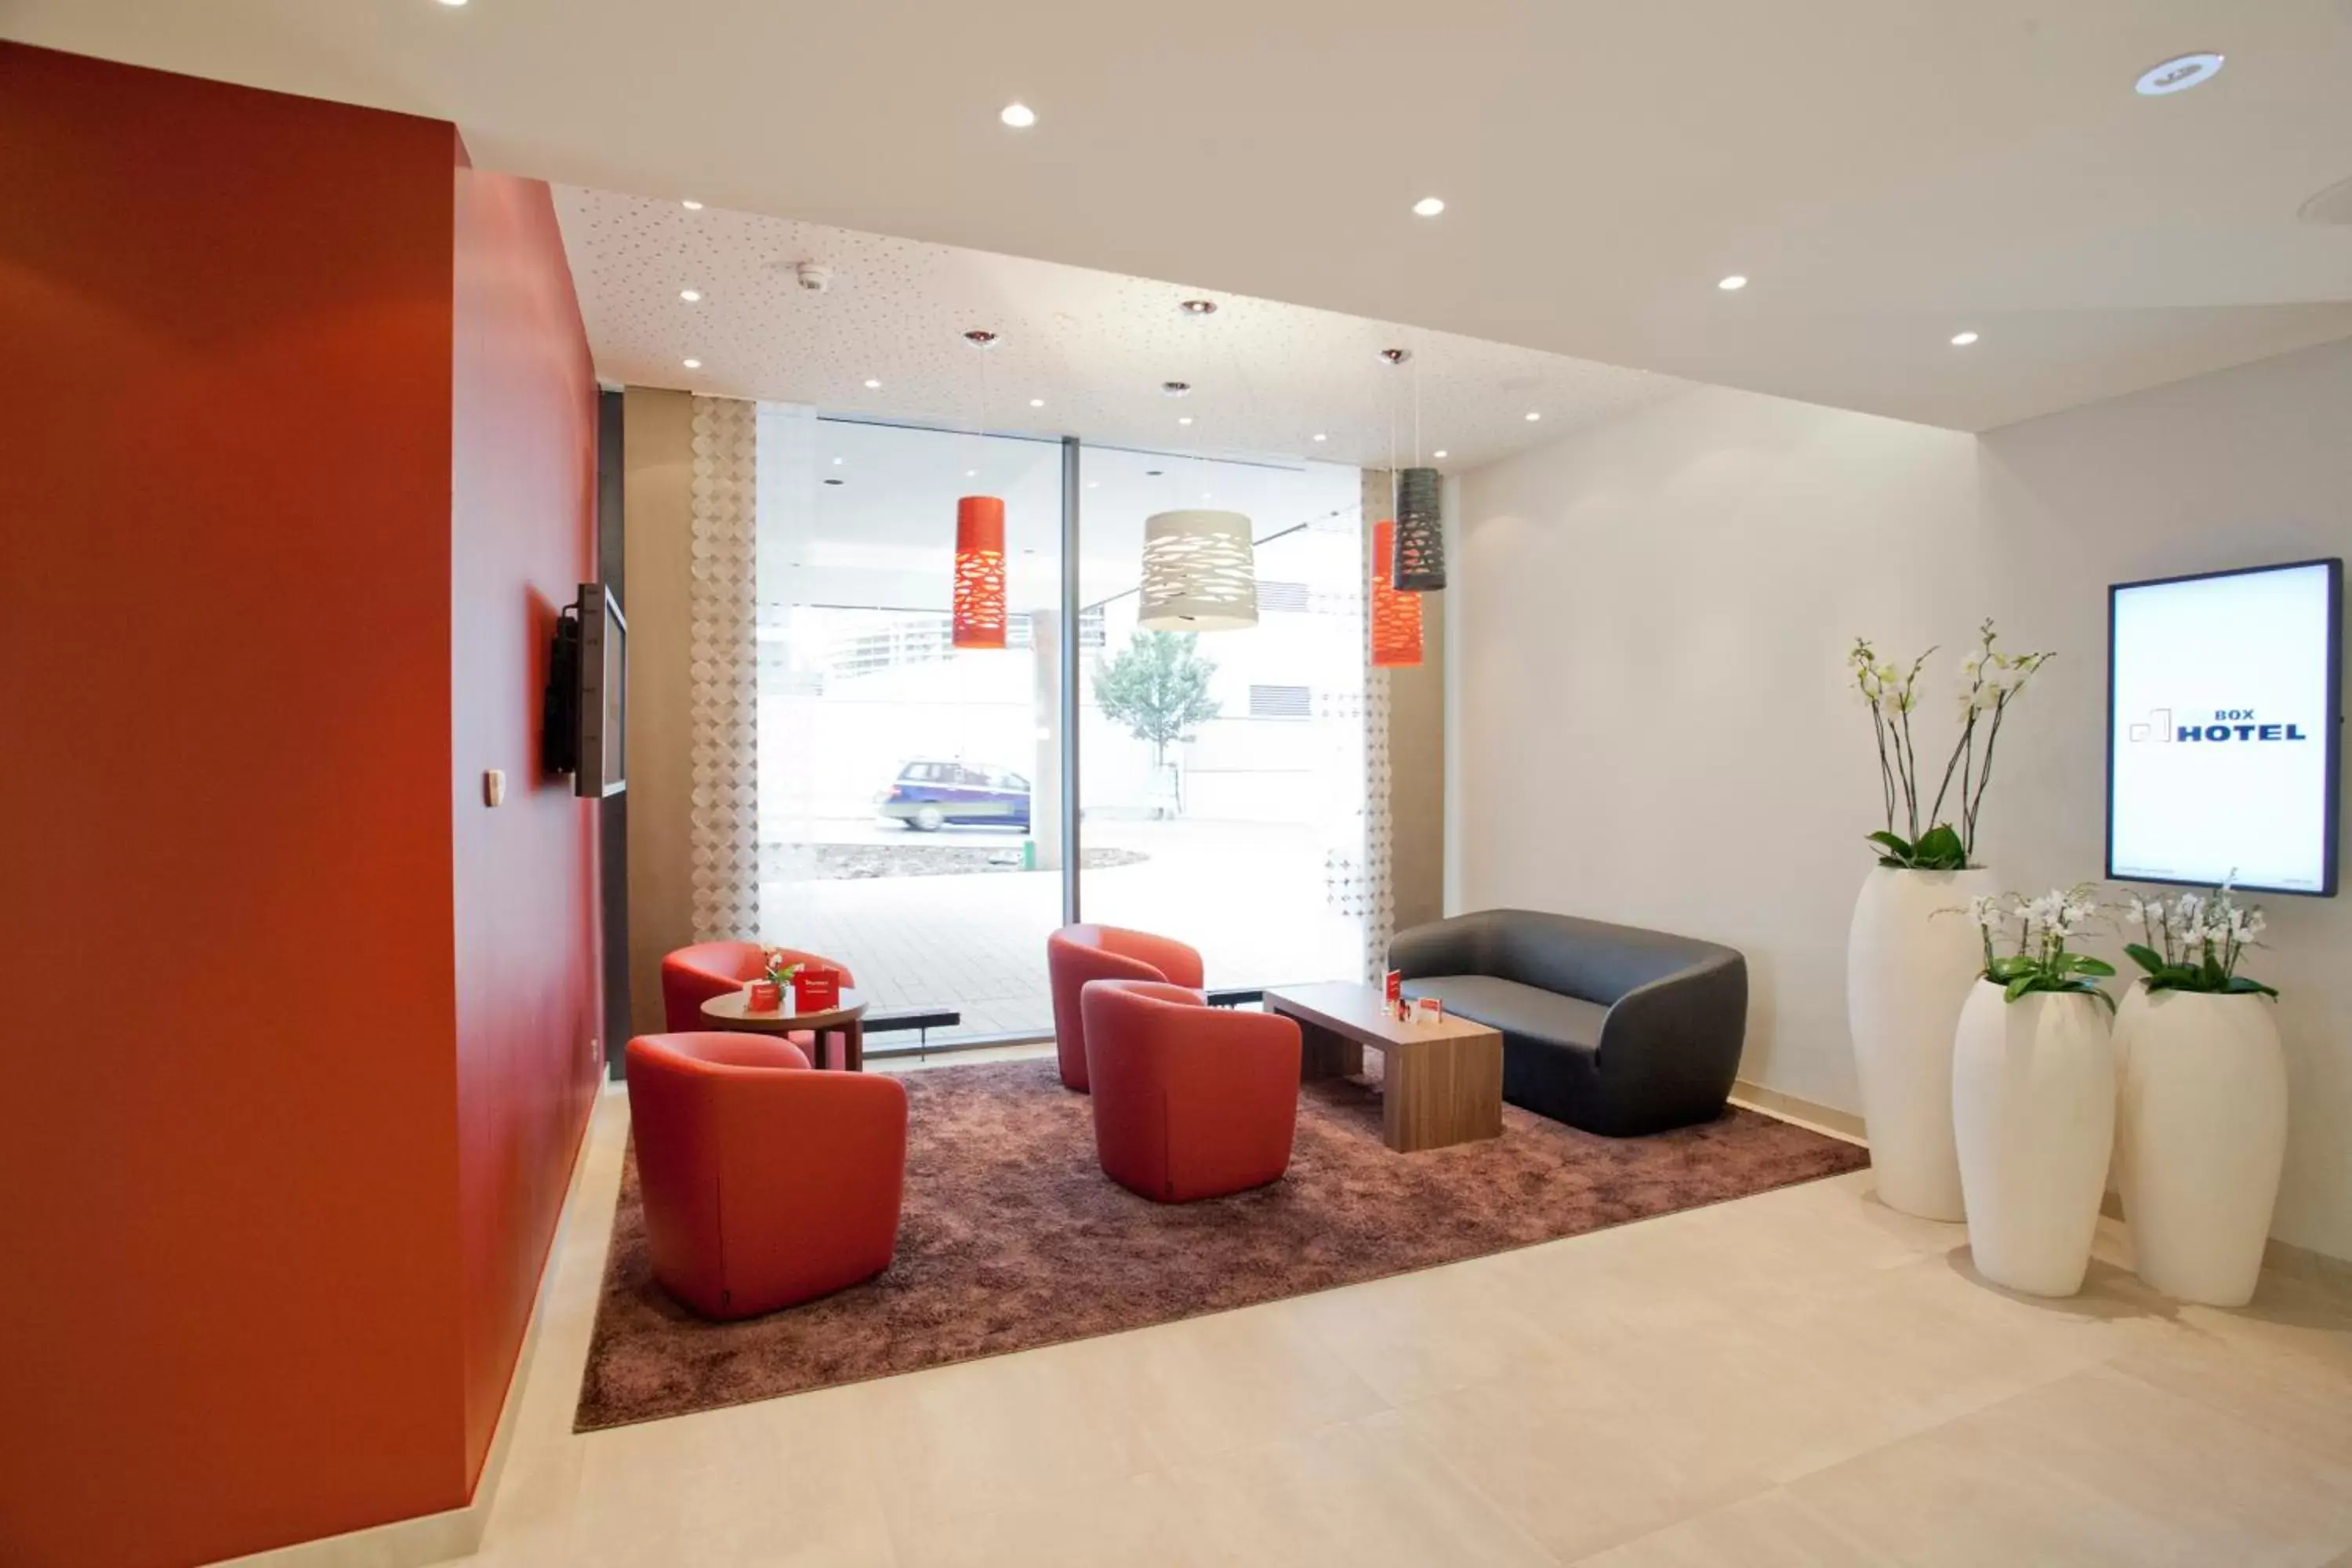 Lobby or reception, Seating Area in bigBOX ALLGAEU Hotel